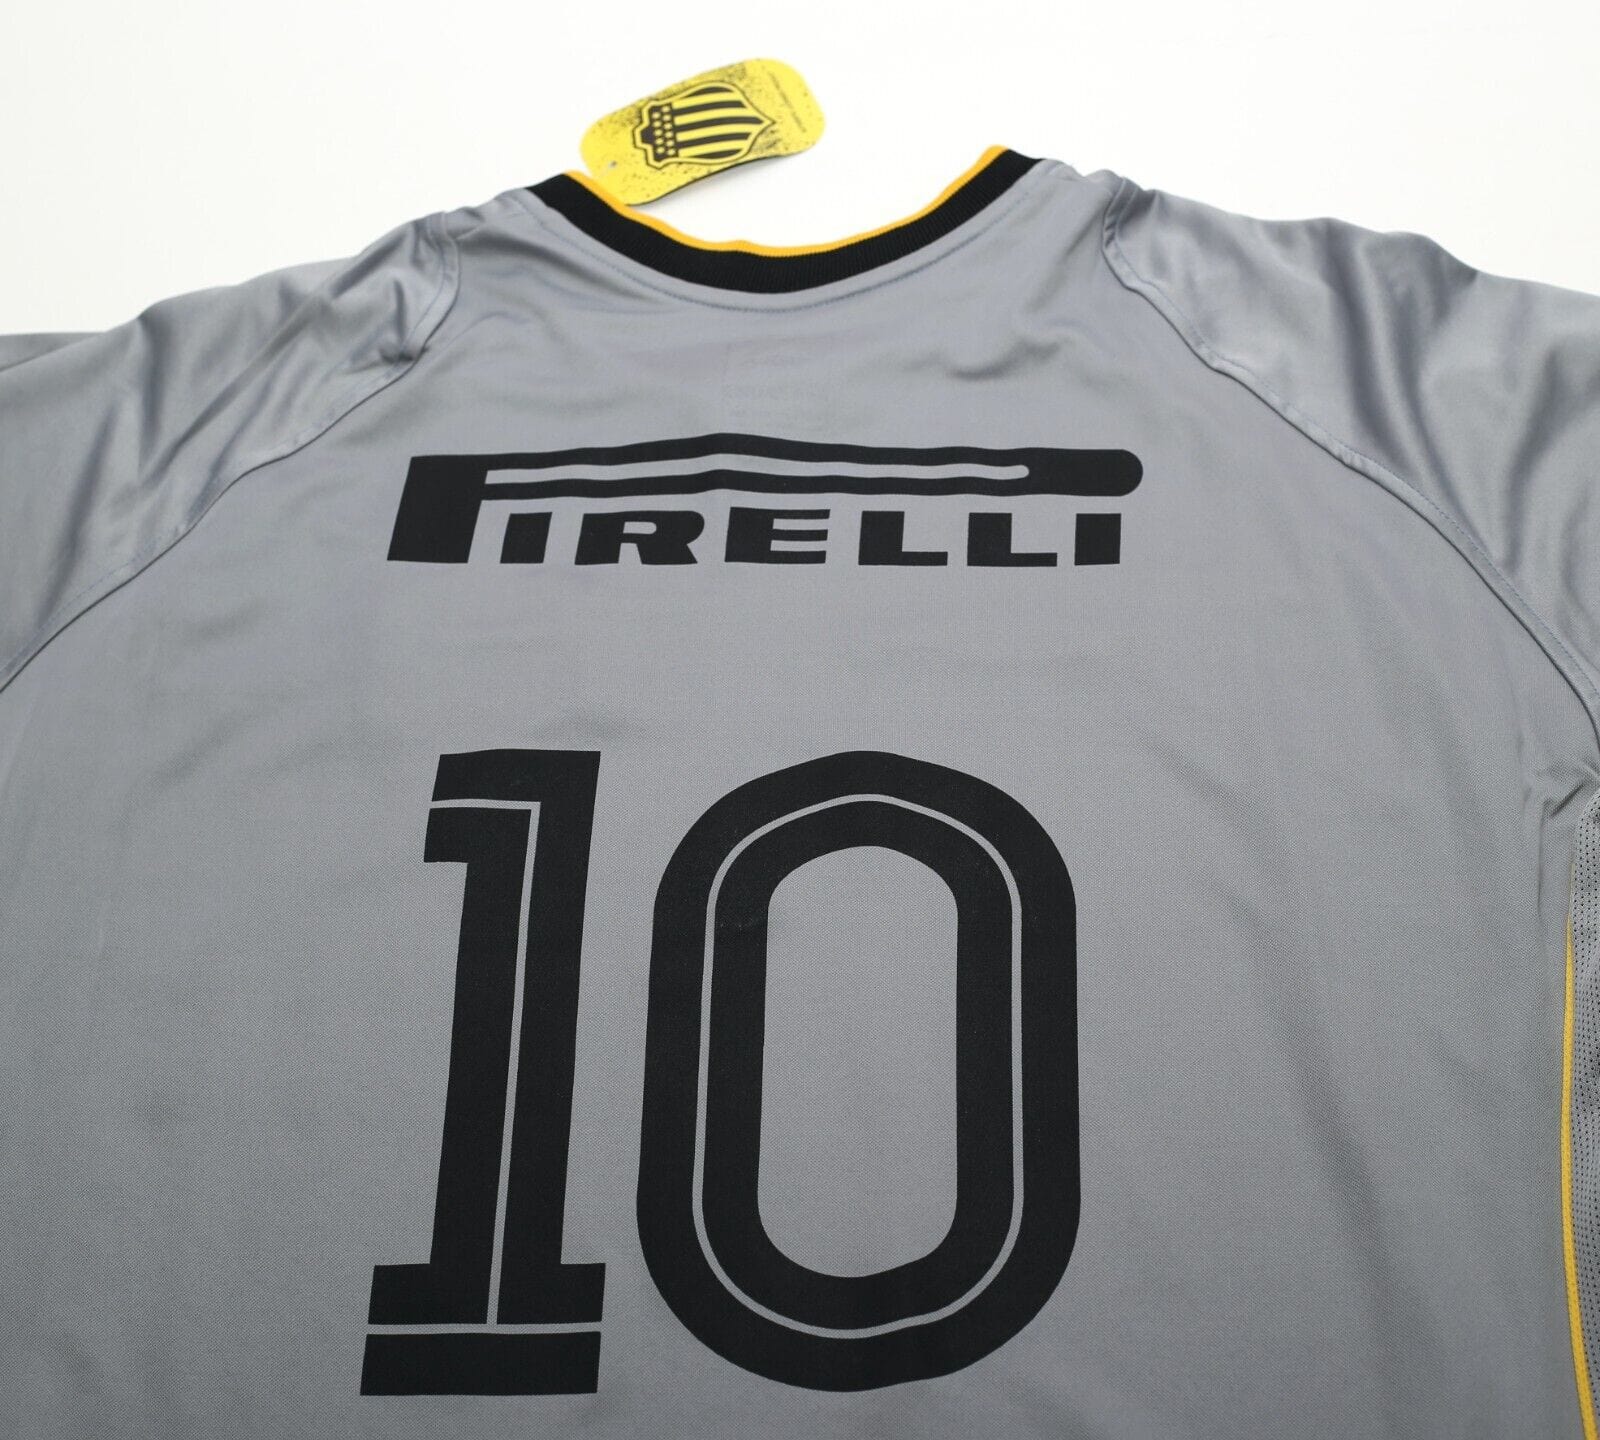 2003 PENAROL Vintage Umbro Third Football Shirt Jersey (L) BNWT